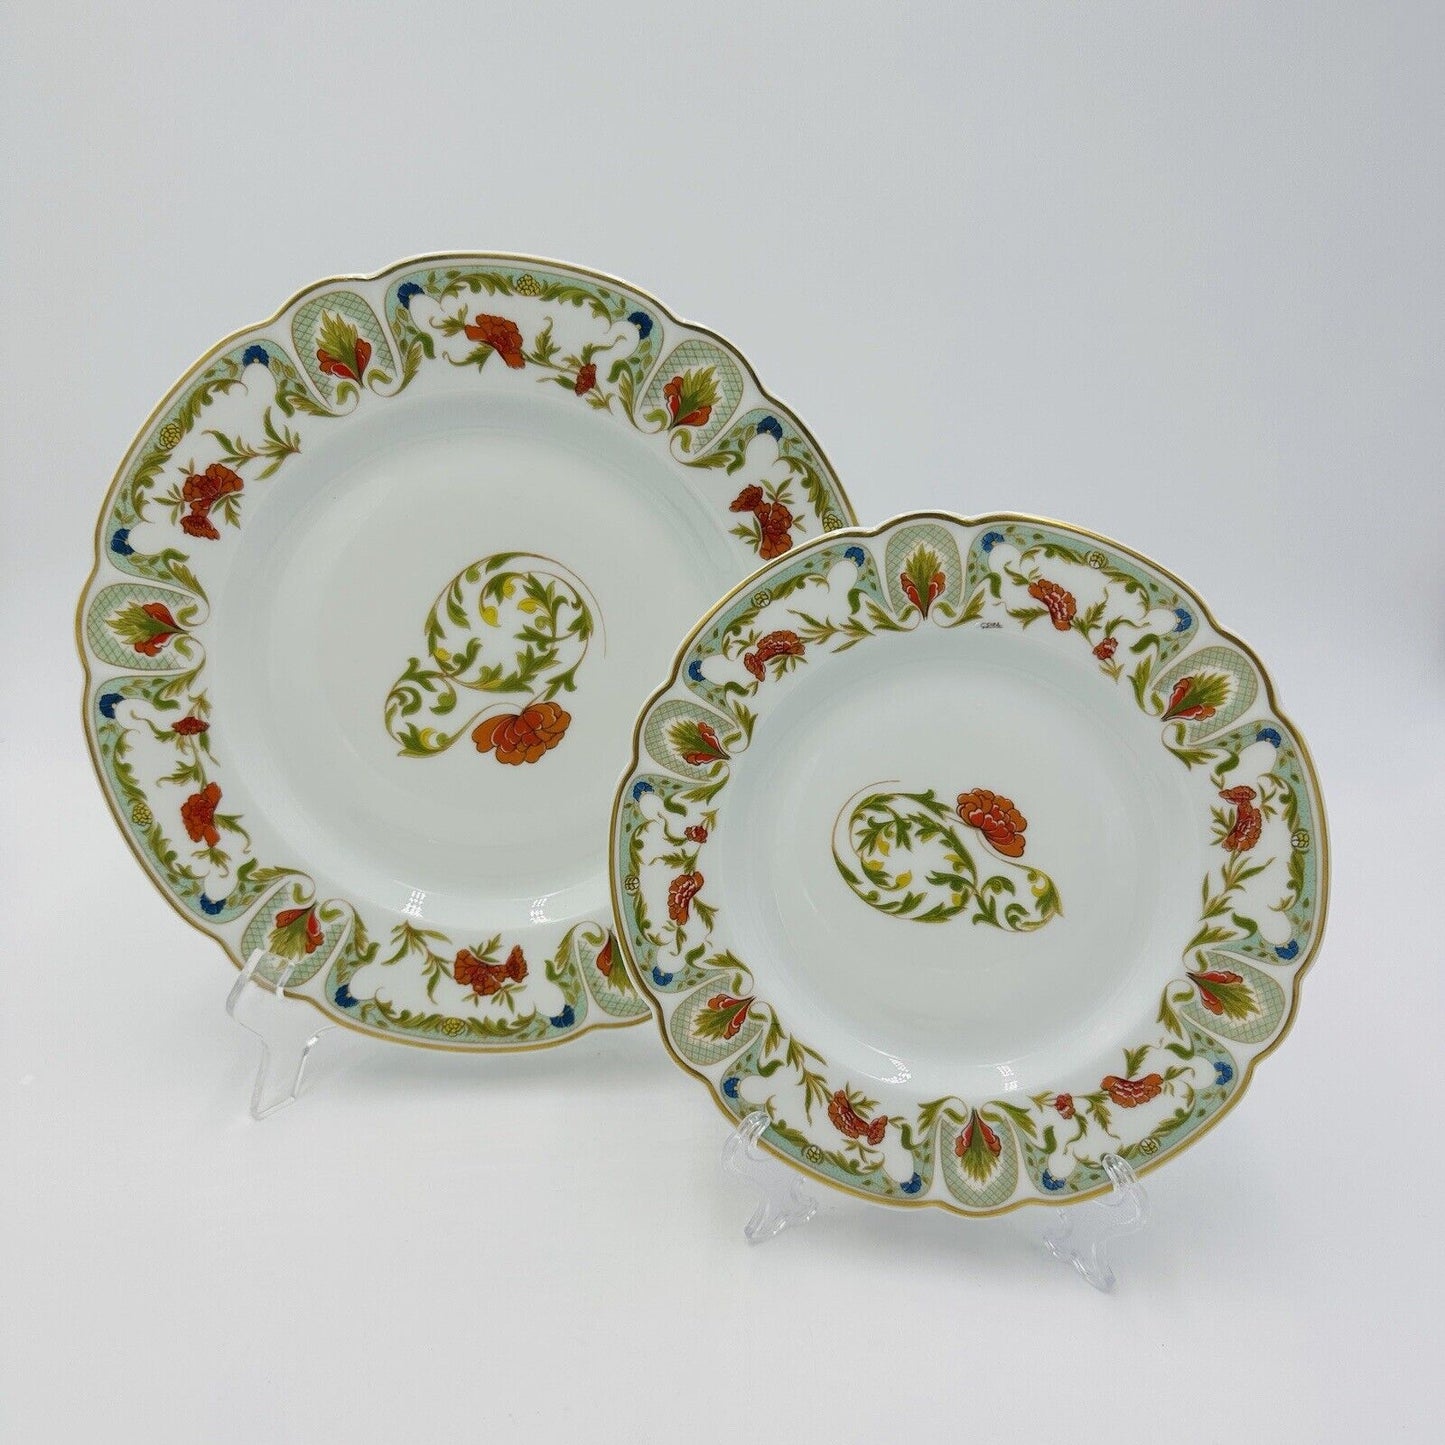 Vintage Charles Haviland Limoges France Porcelain Dinner and Salad Plates Set